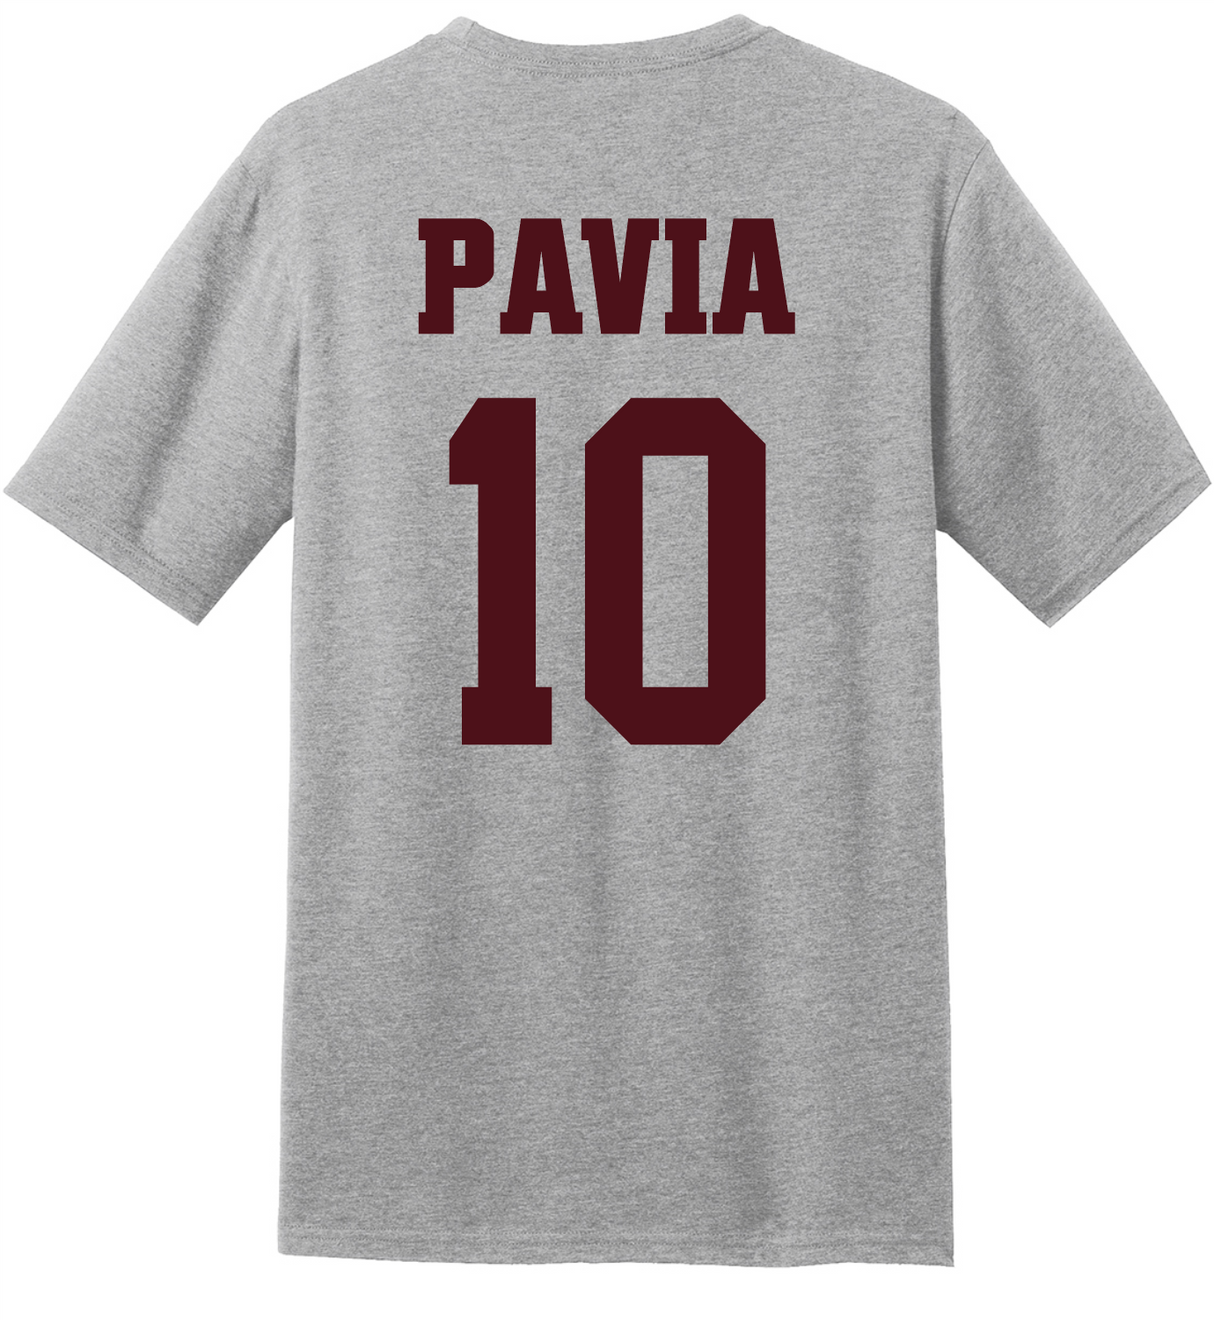 Pavia #10 Football Tee